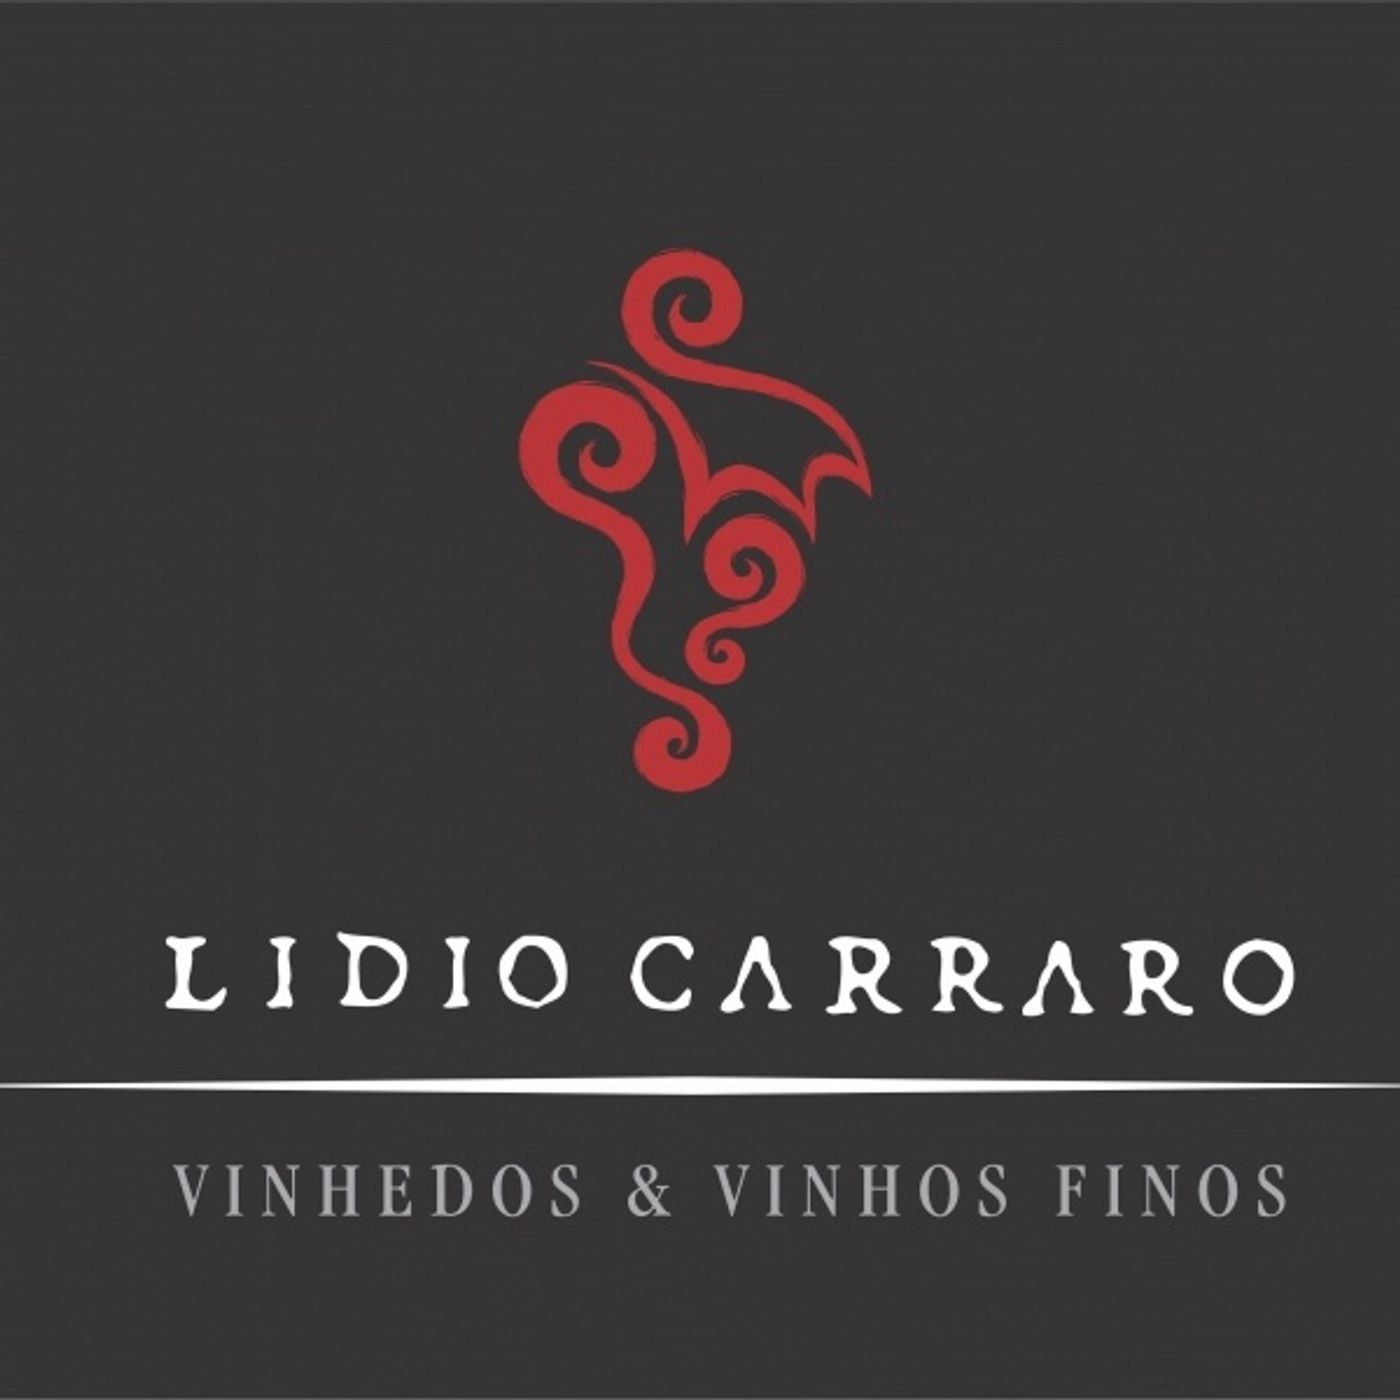 Lidio Carraro -Juliano Carraro